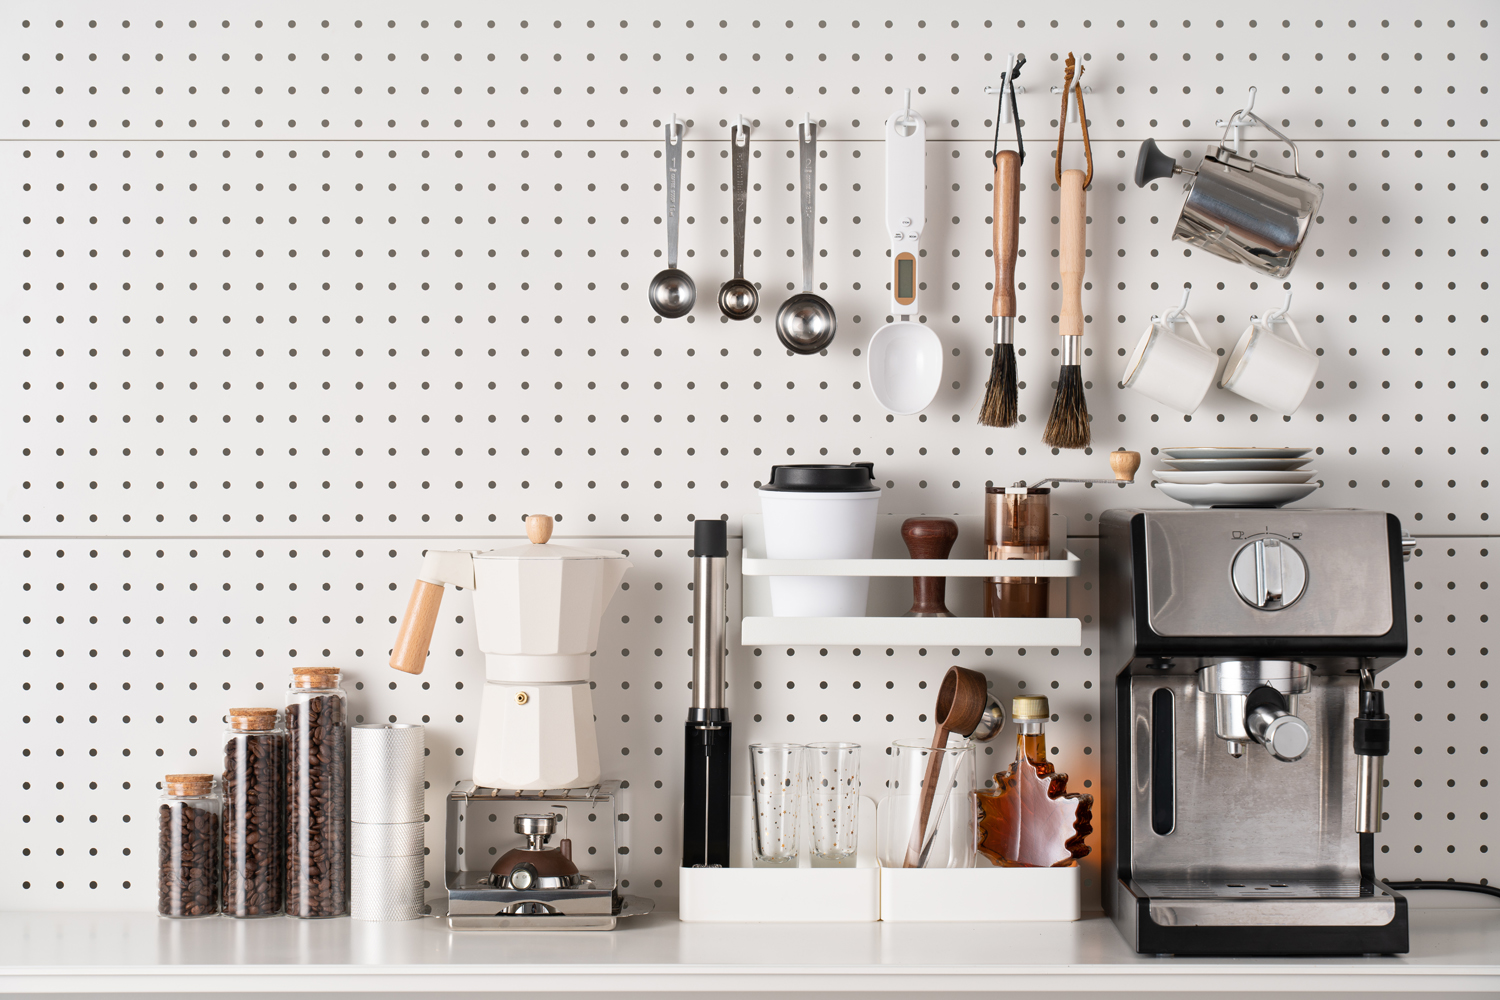 10 Best Under-$25 Kitchen Gadgets on